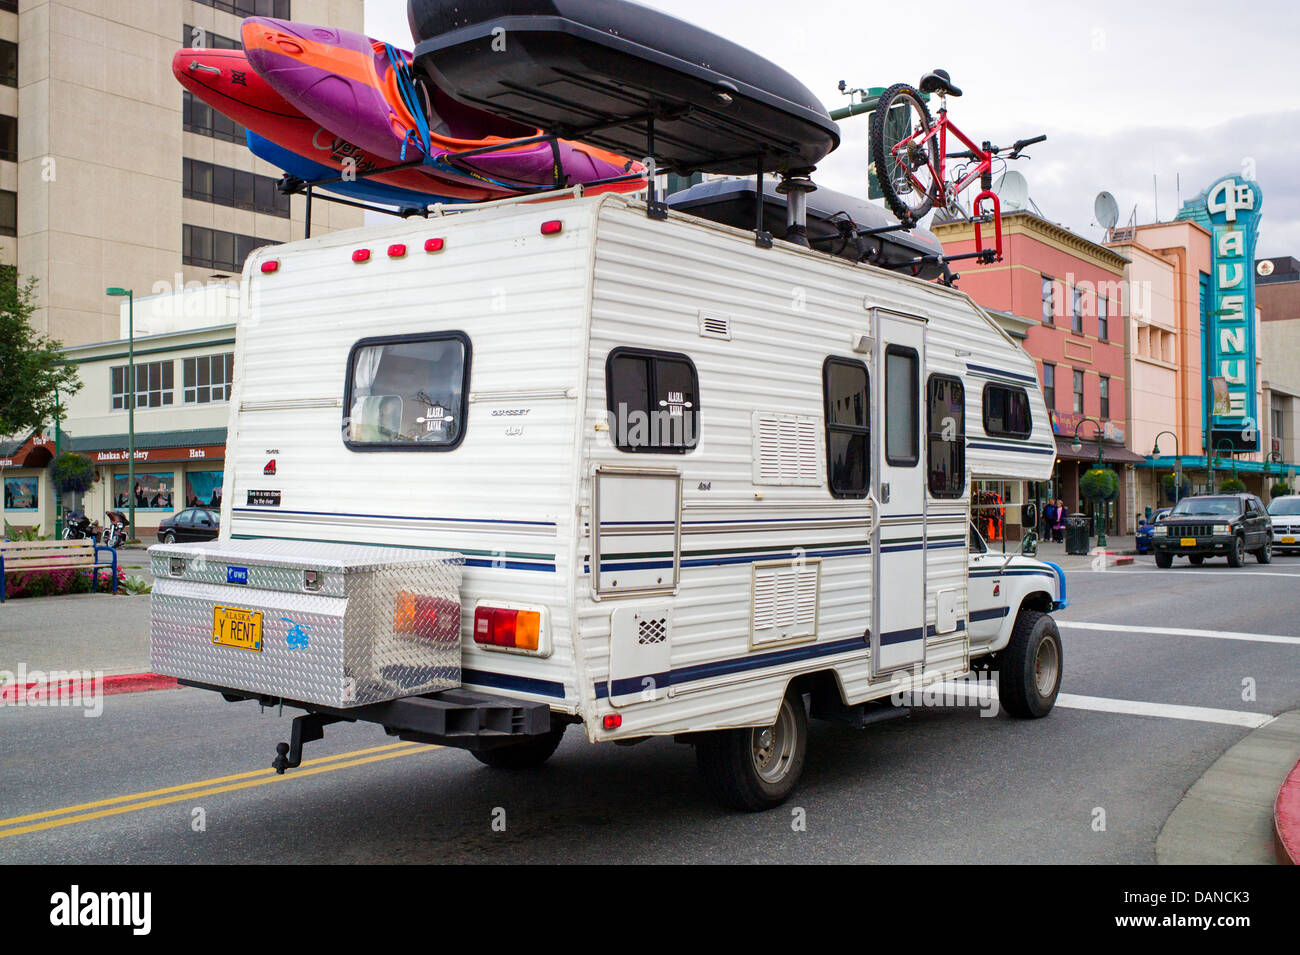 Camping-camion avec plaque de licence qui lit 'y louer des kayaks, vélos' est porteur et du matériel de camping, Anchorage, Alaska, USA Banque D'Images